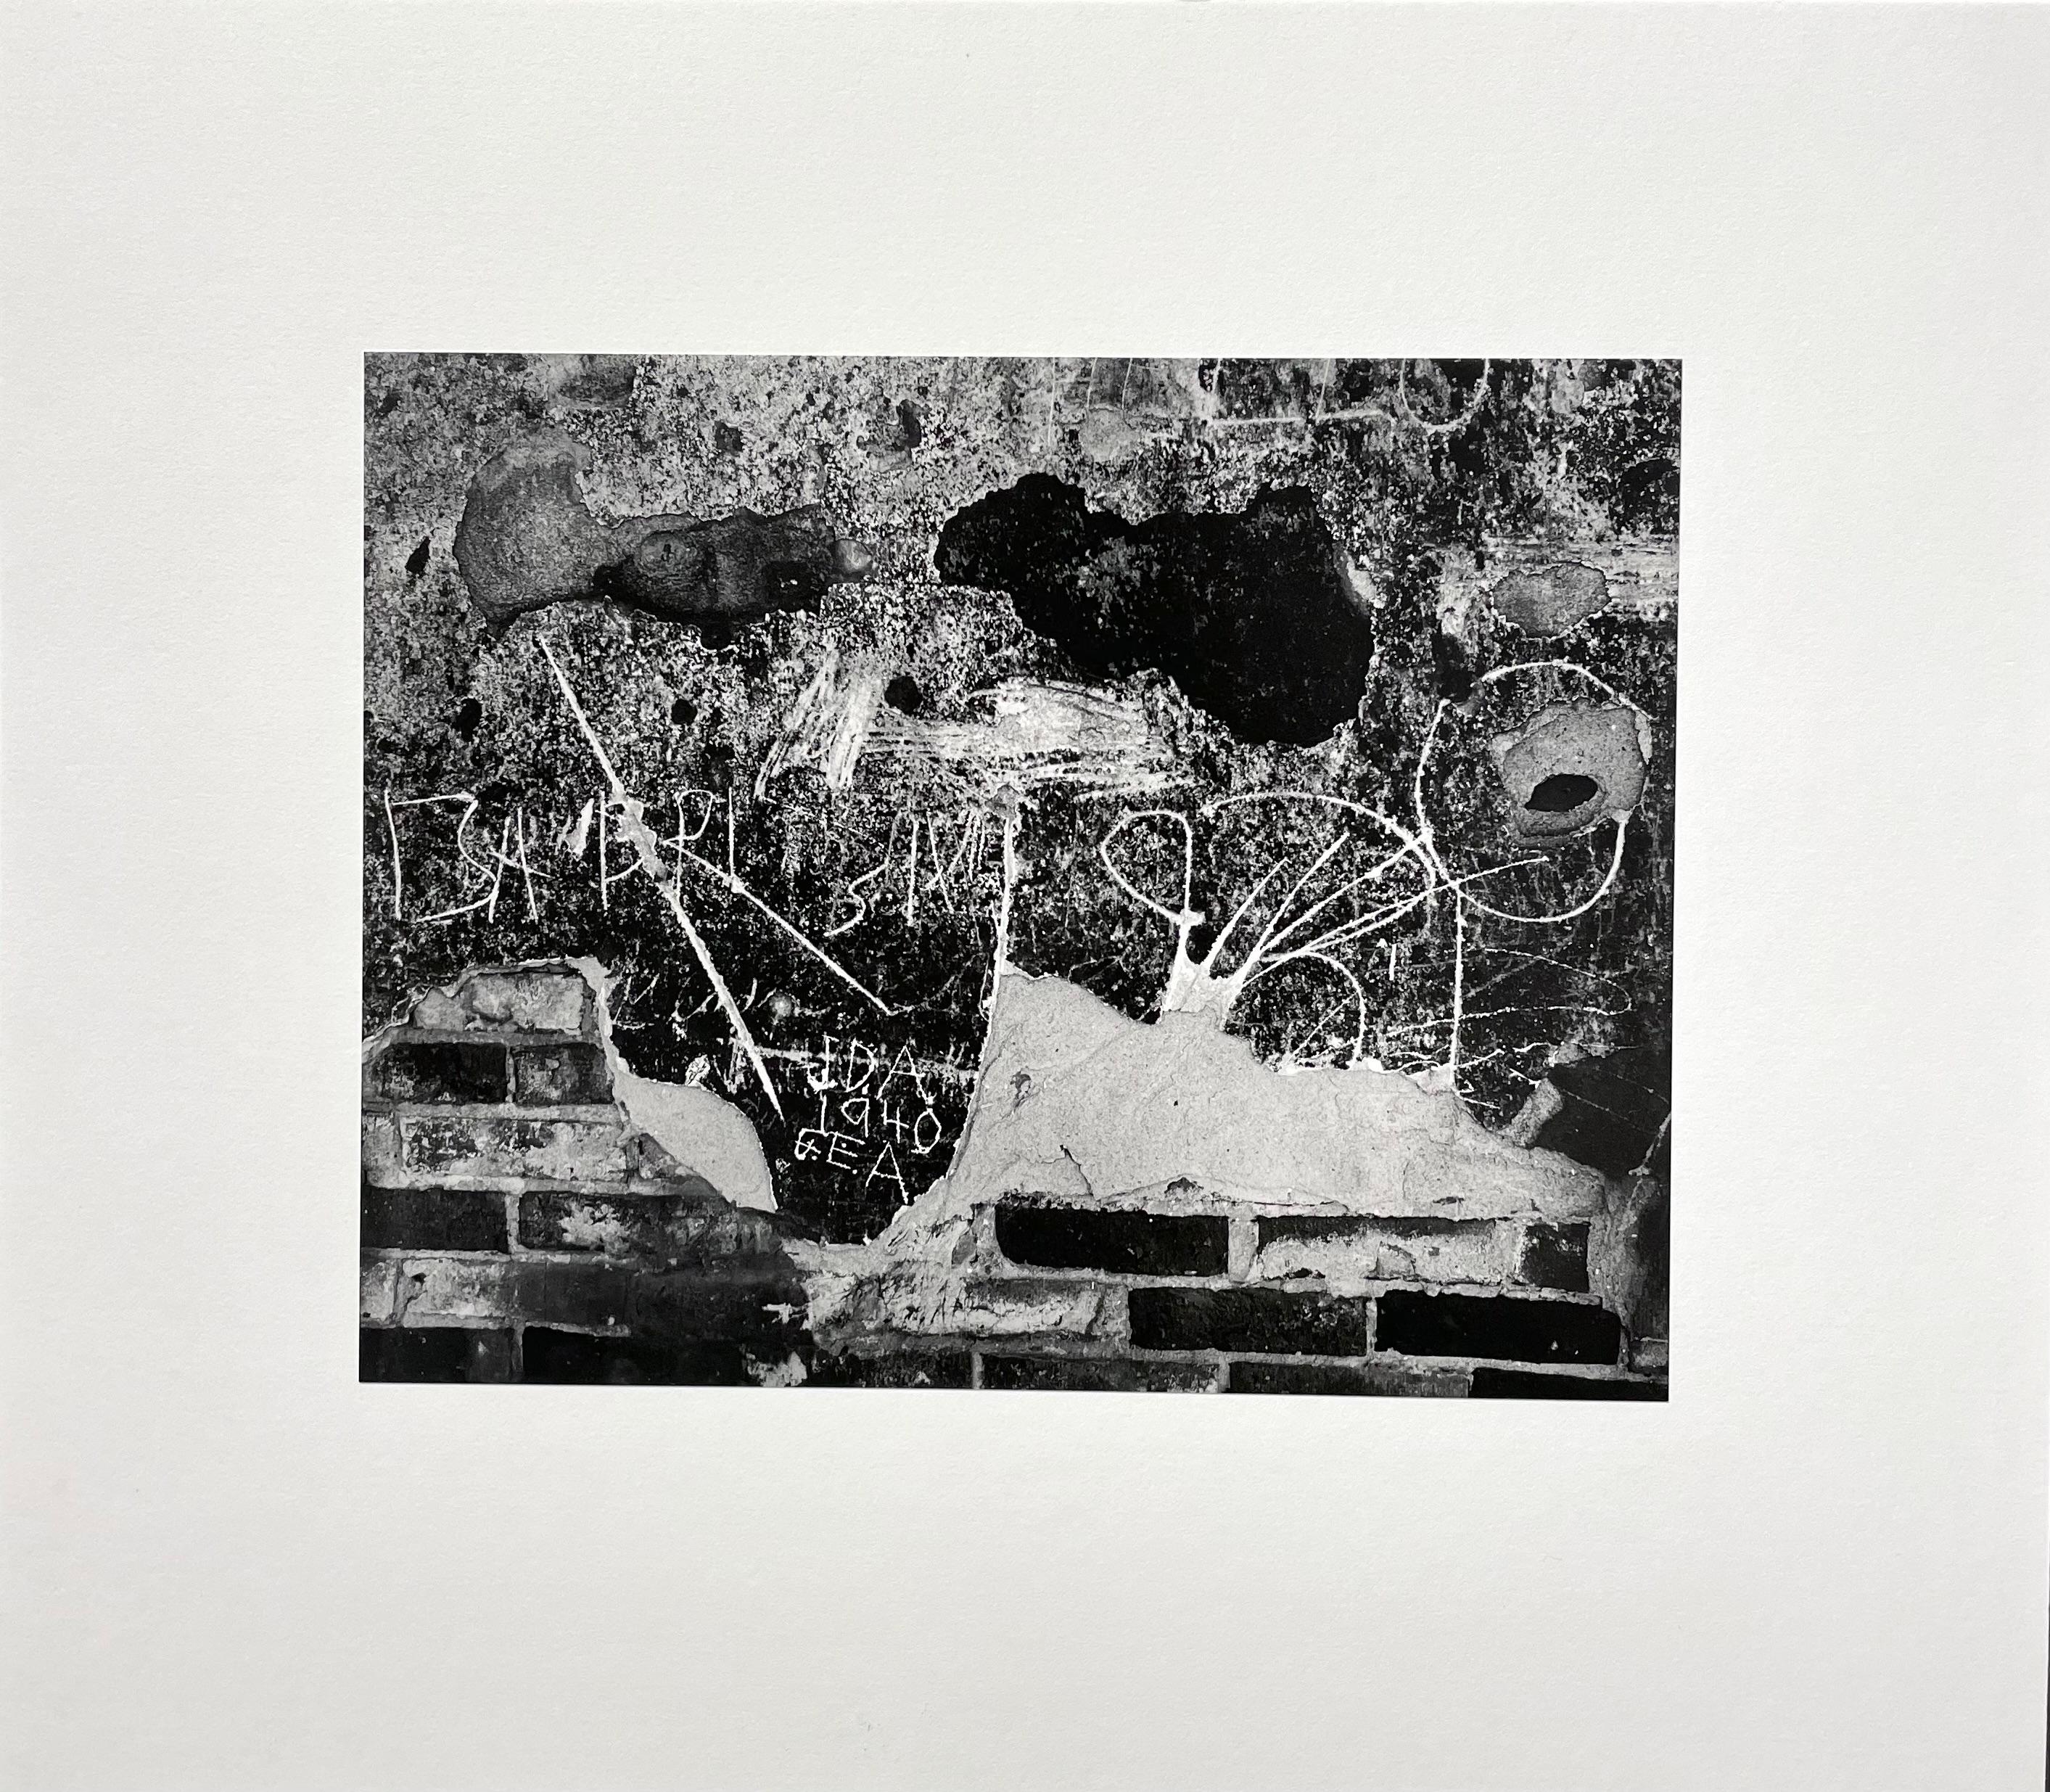 Wall Scrawls, 1940 - Photograph by Edward Weston